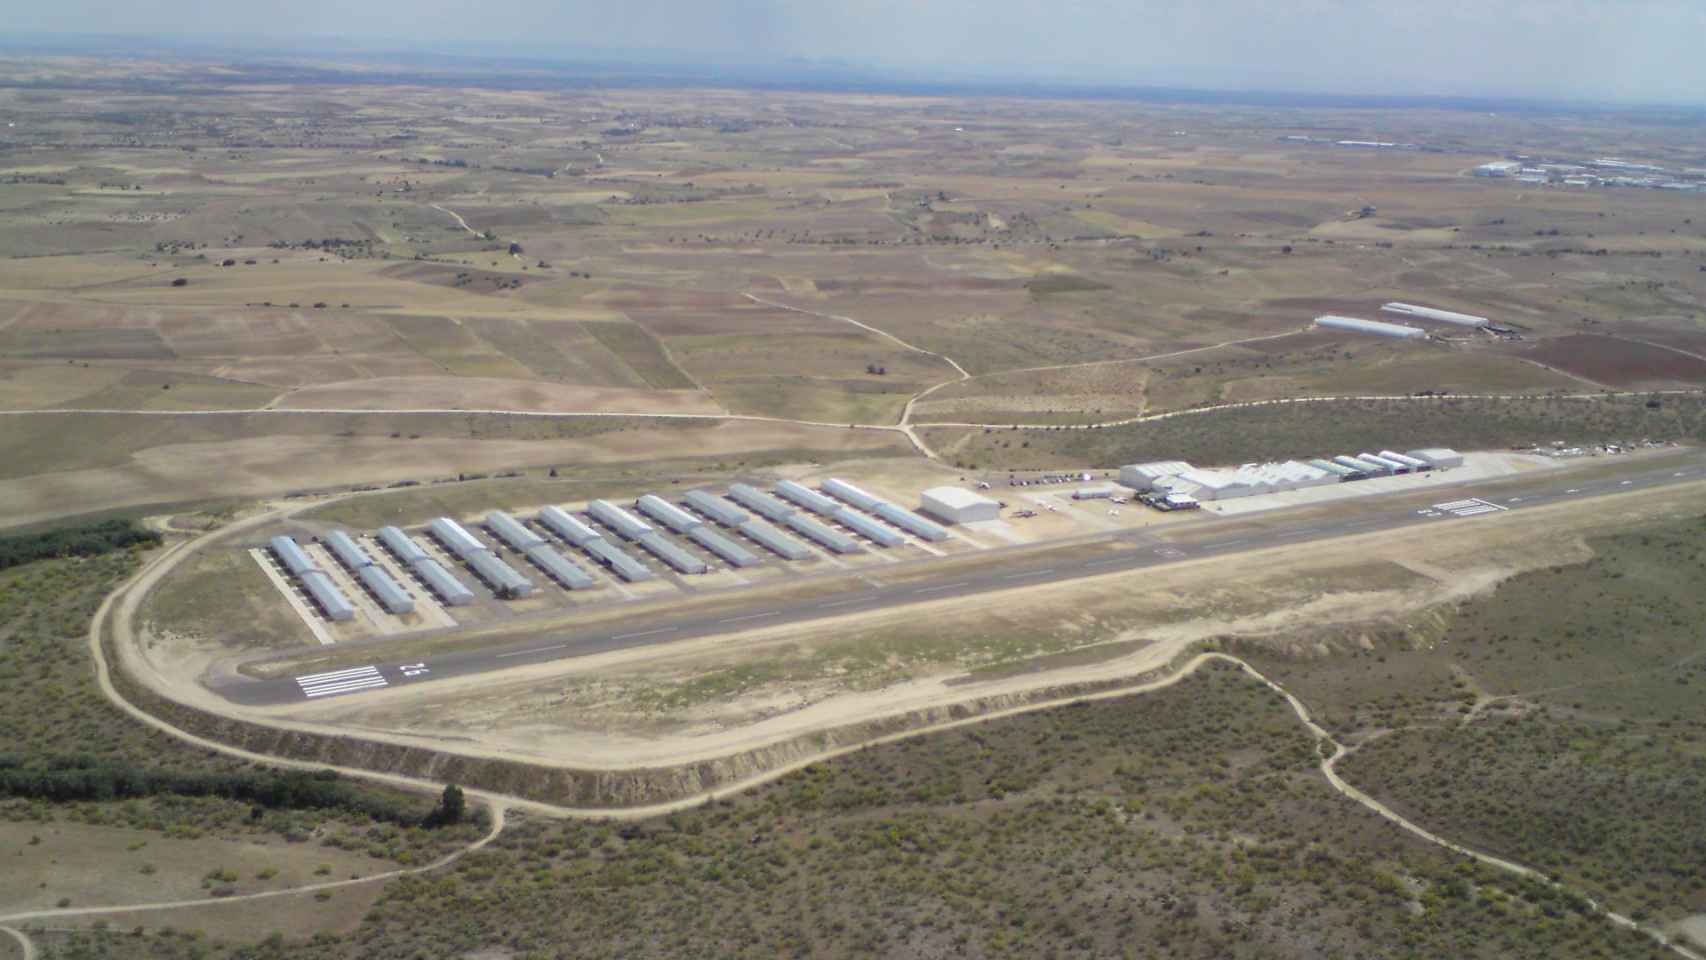 Vista aérea del aeródromo de Casarrubios del Monte (Toledo).